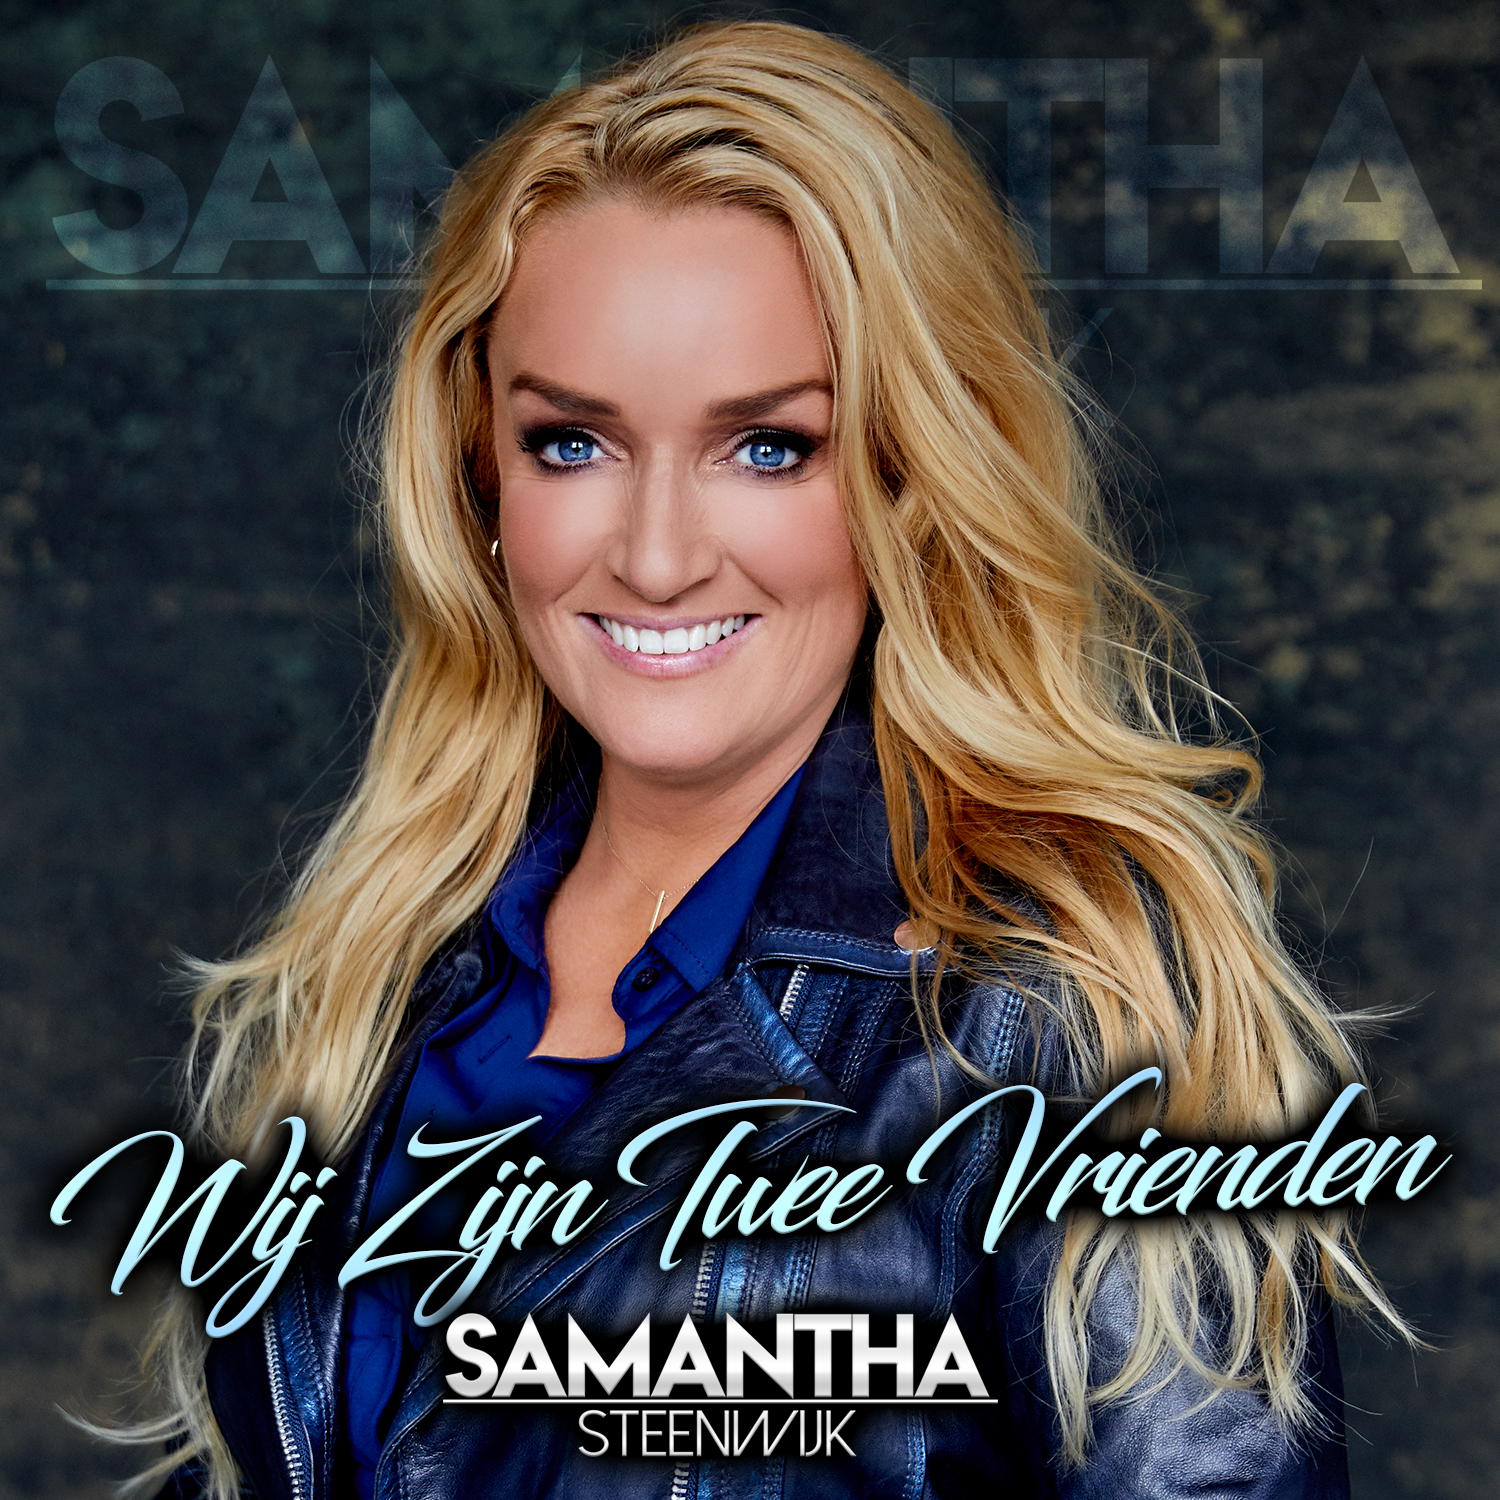 Samantha Steenwijk – Wij zijn twee vrienden